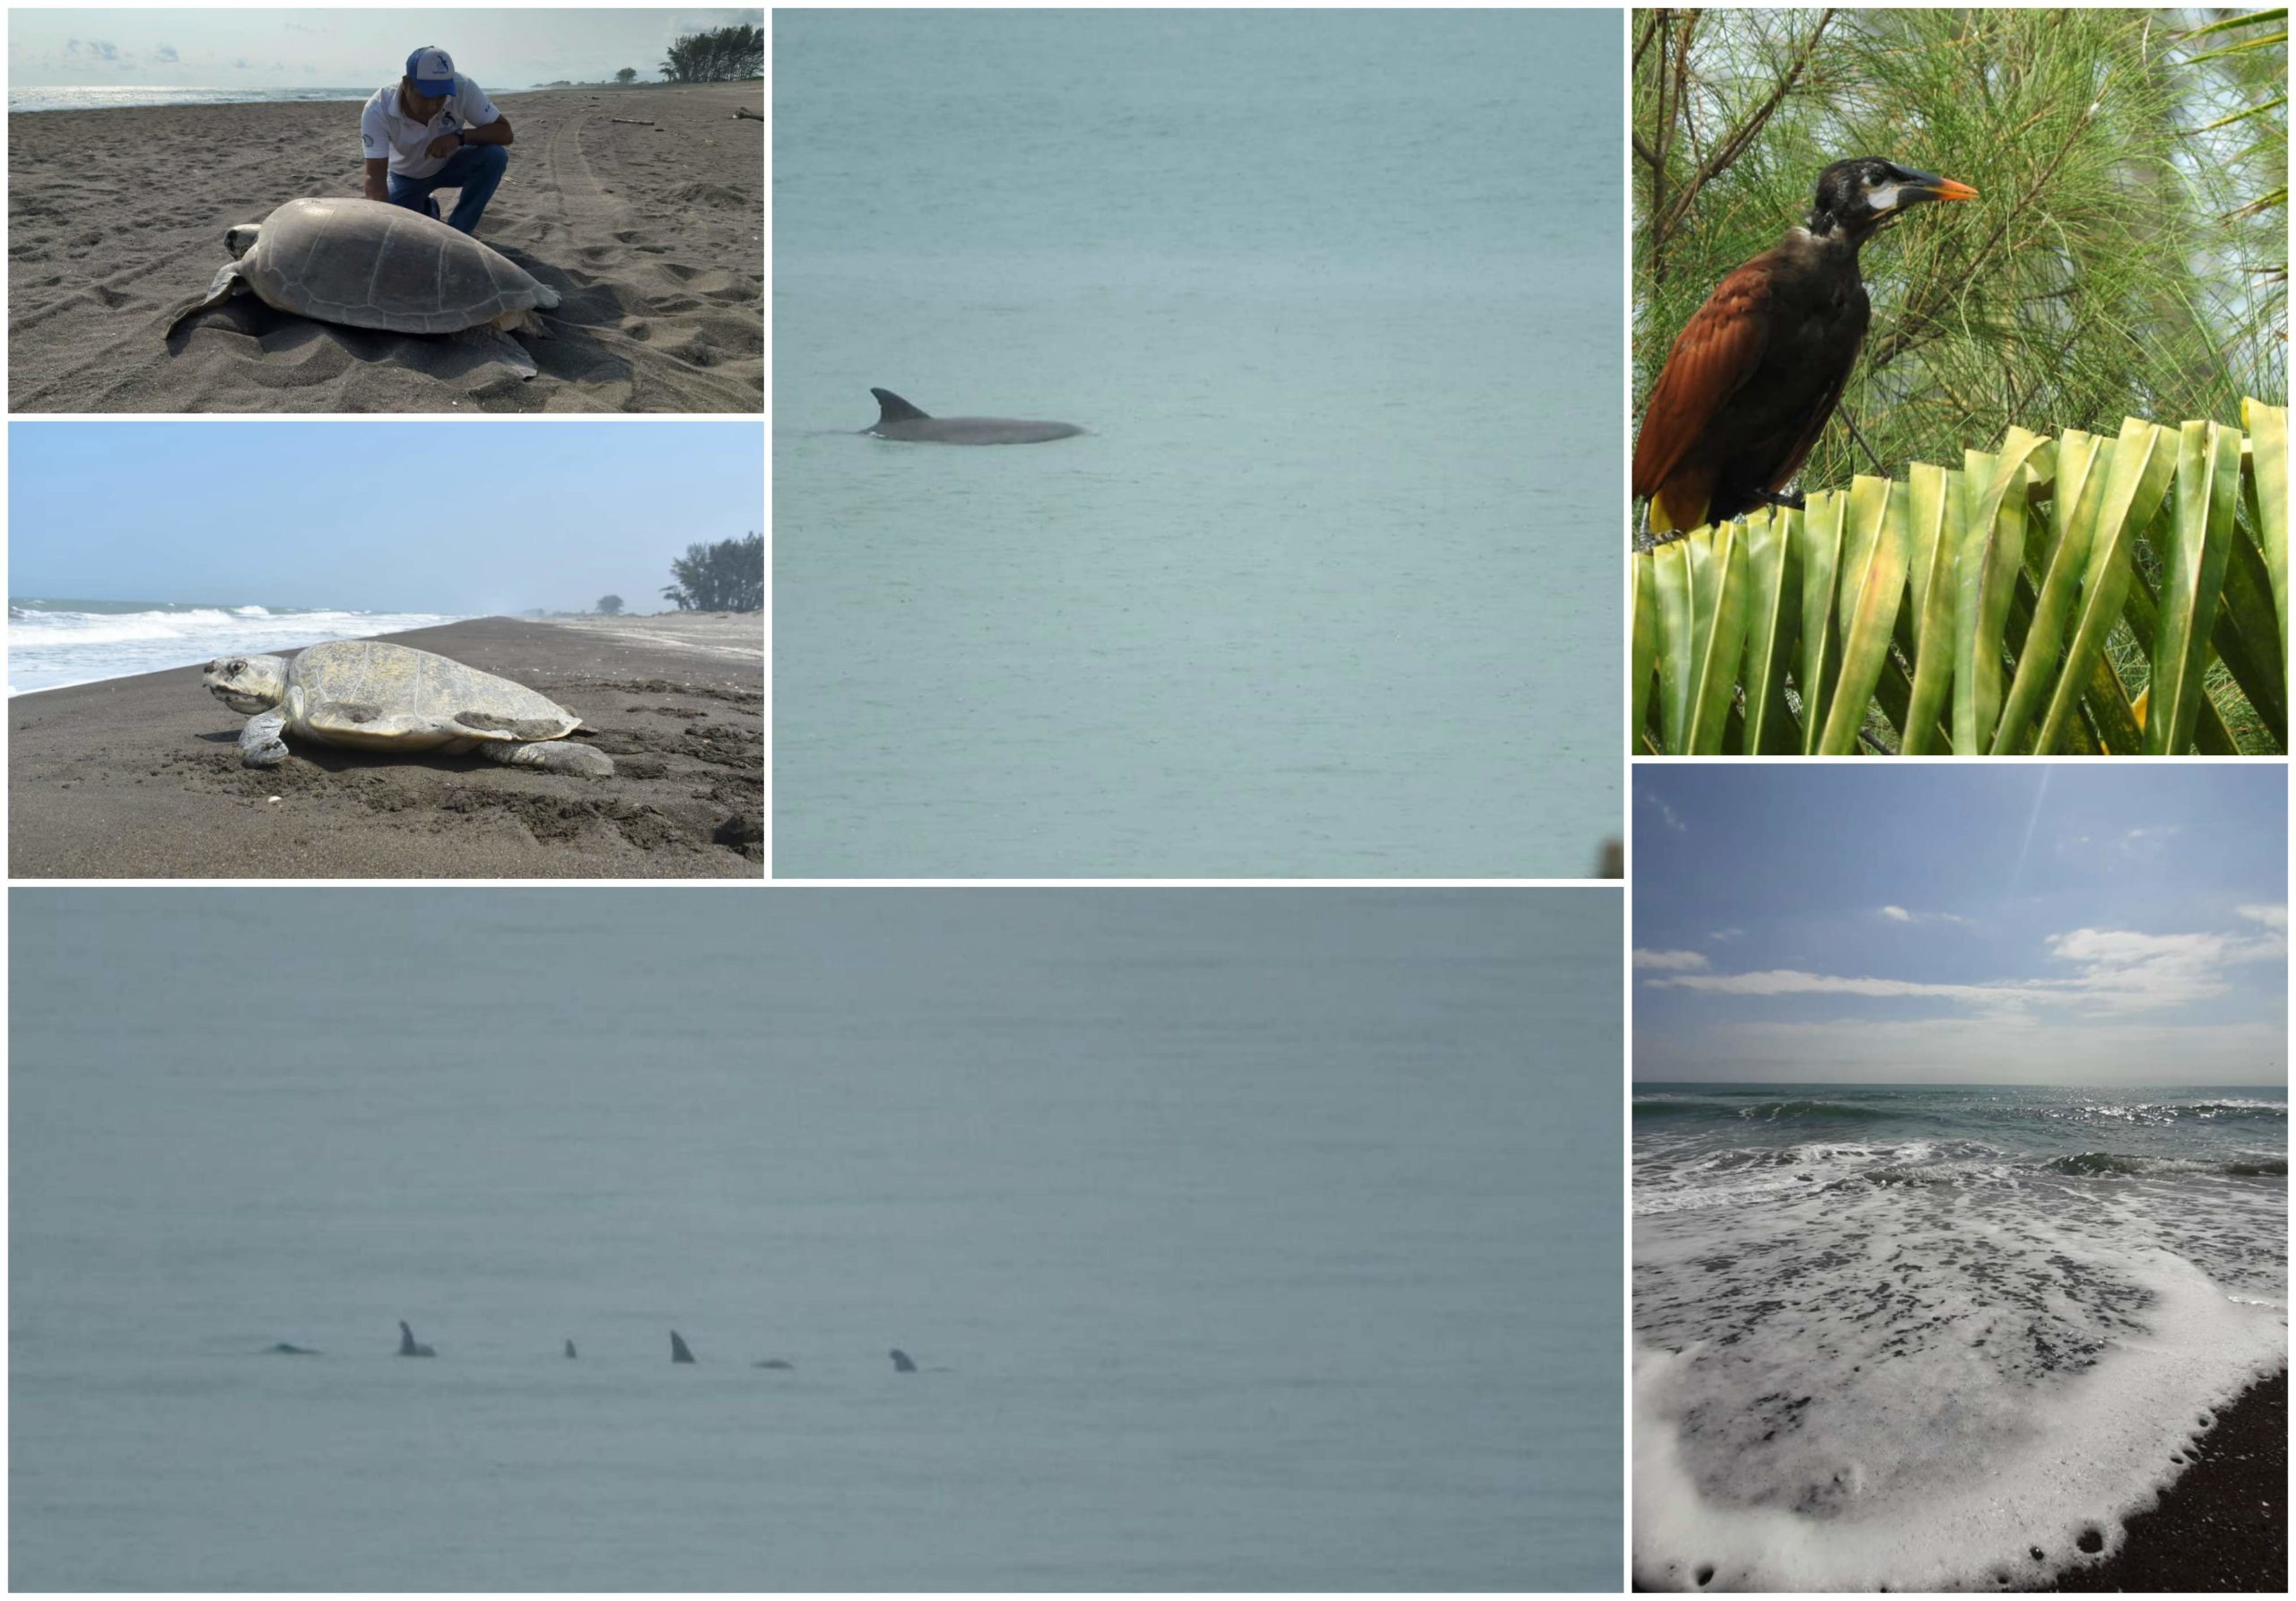 Delfines, aves migratorias y playas limpias en Nautla durante estas semanas